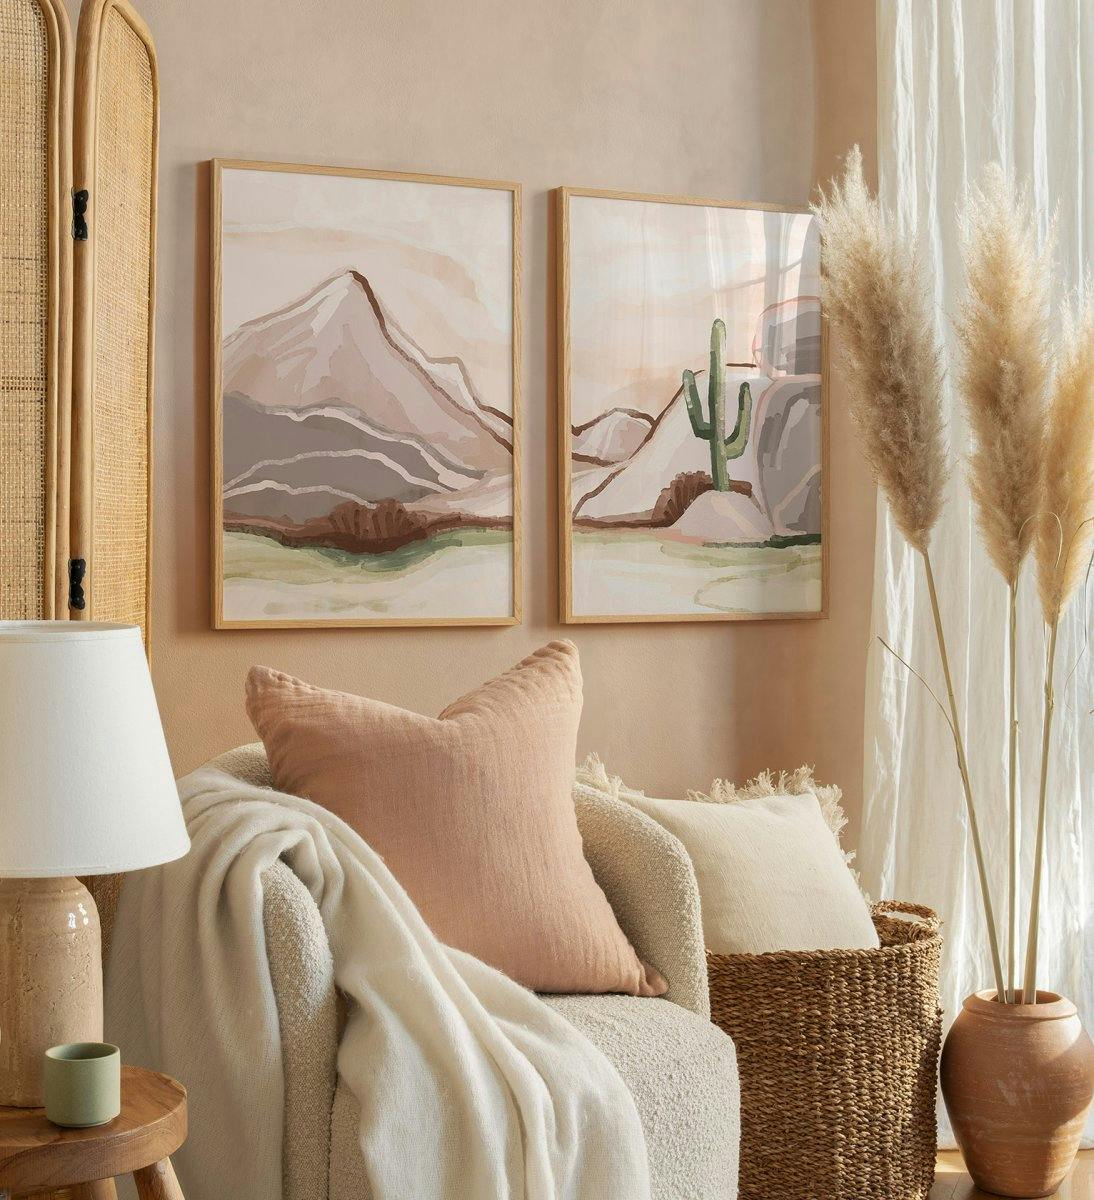 침실 또는 거실 용 오크 프레임이있는 갈색과 베이지 색의 산 일러스트 갤러리월